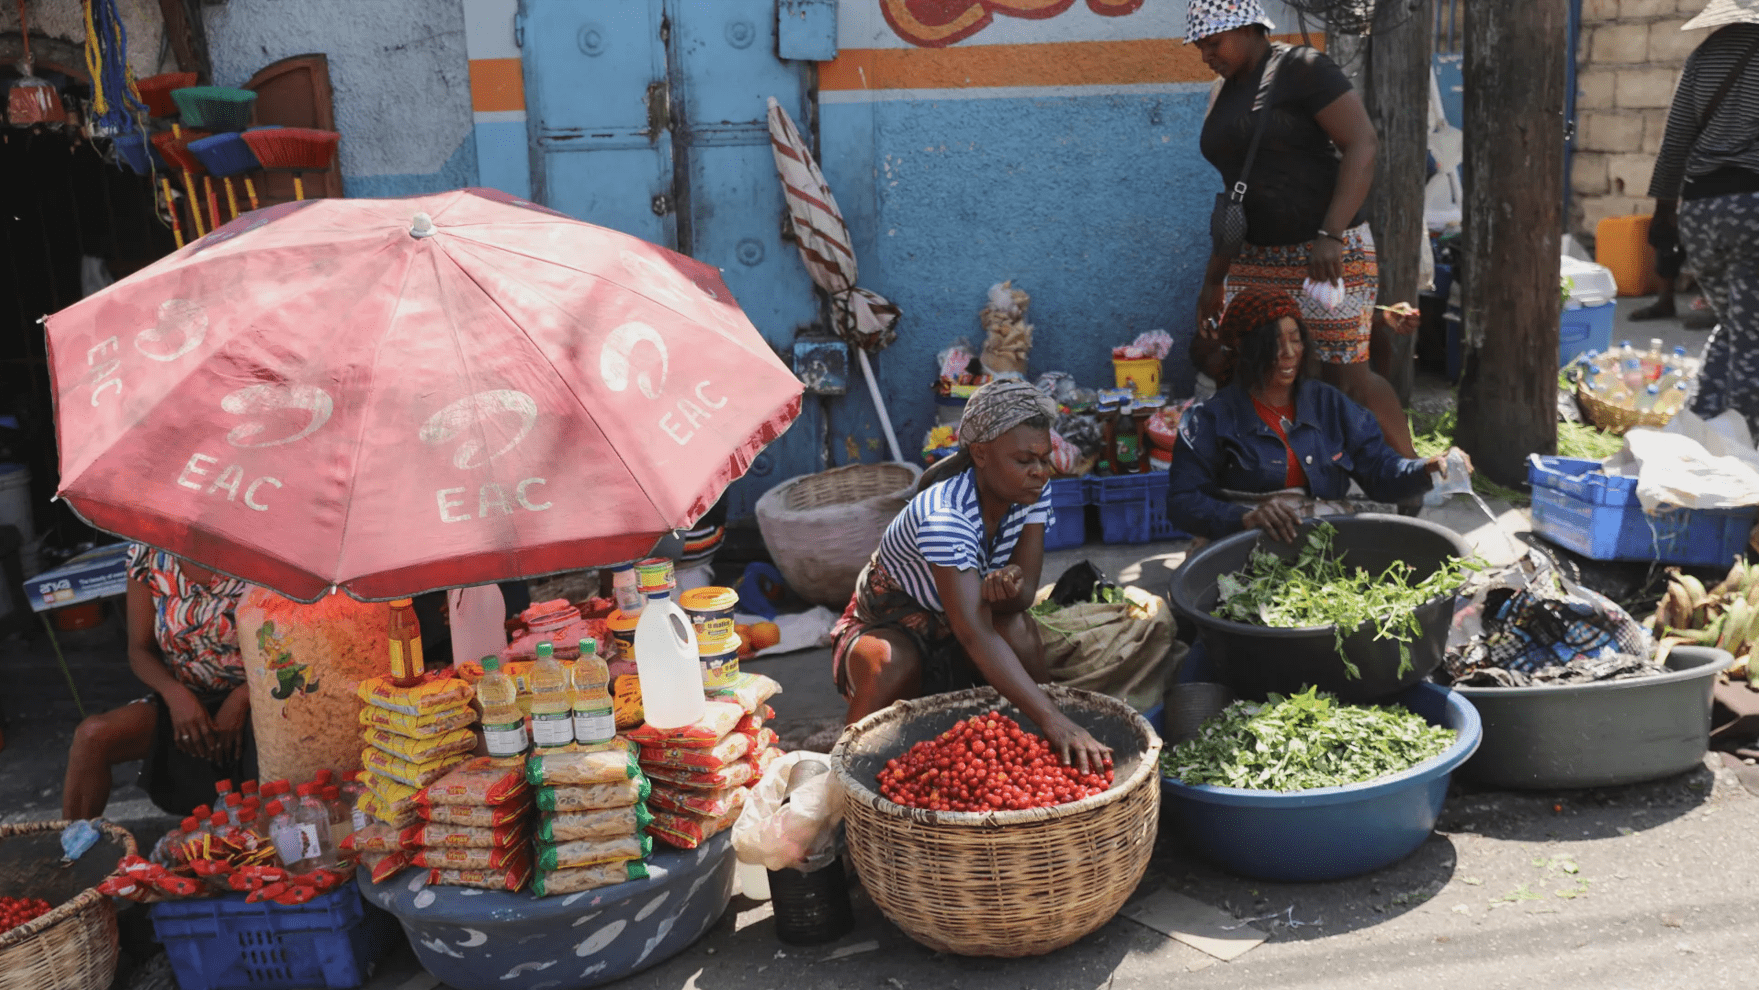 Haití: Otra intervención extranjera no resolverá la crisis; la solución debe emanar de su propio pueblo